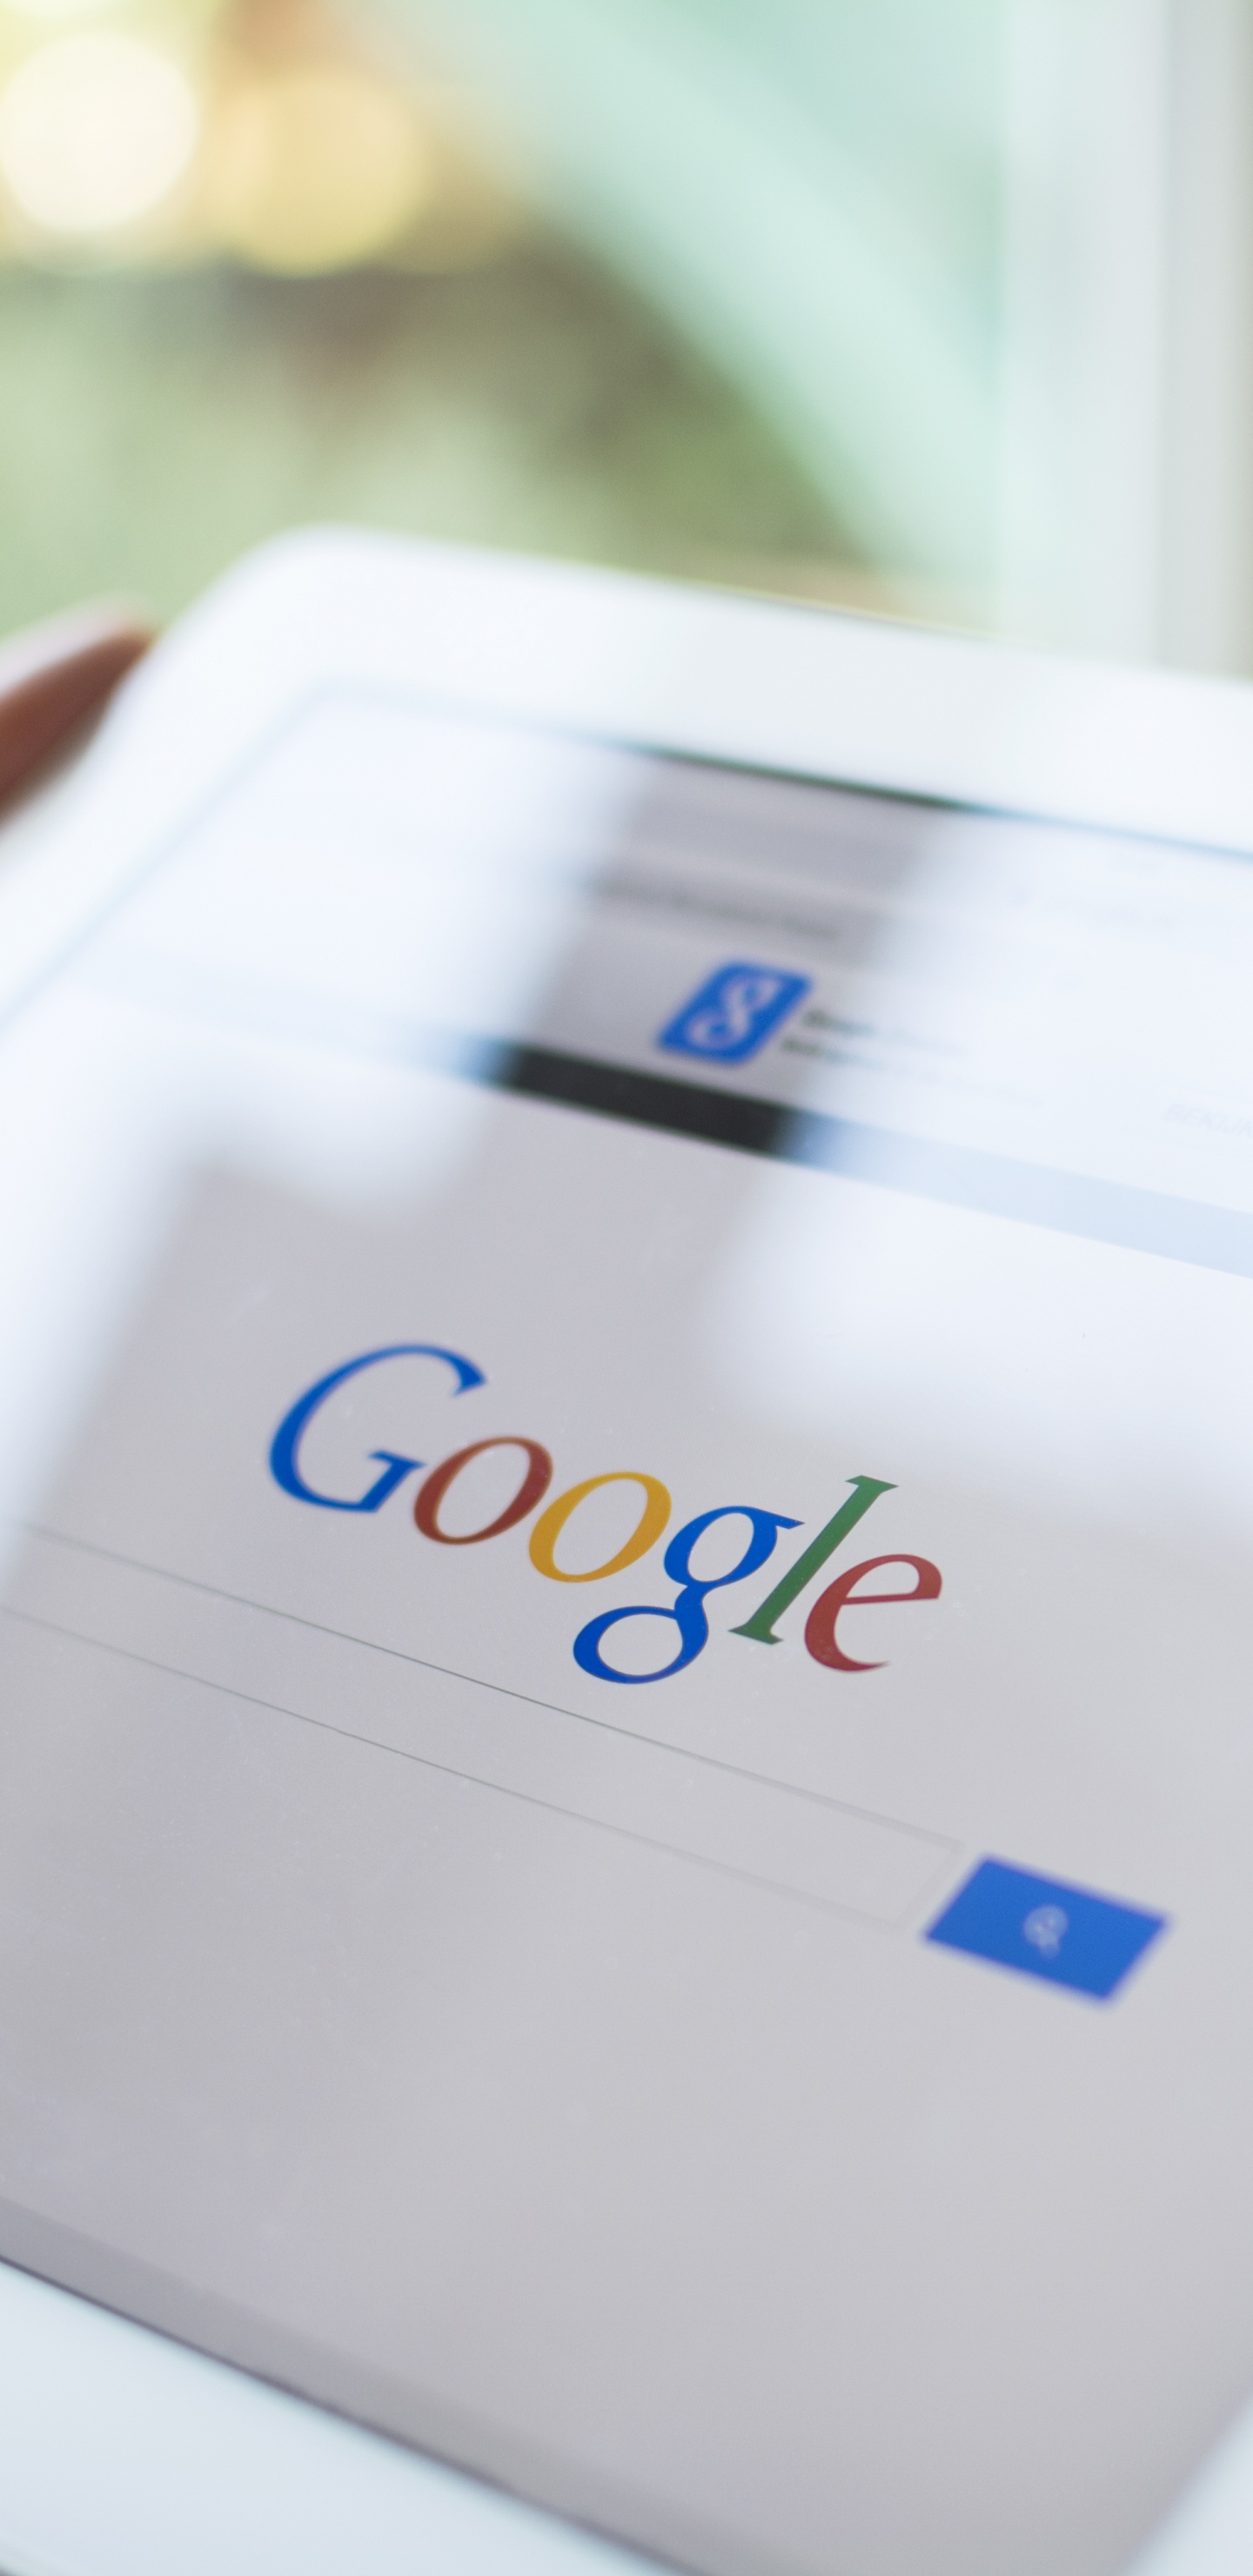 Google, Google-Suche, Google-Anzeigen, Suchmaschinen-Optimierung, Gadget. Wallpaper in 1440x2960 Resolution